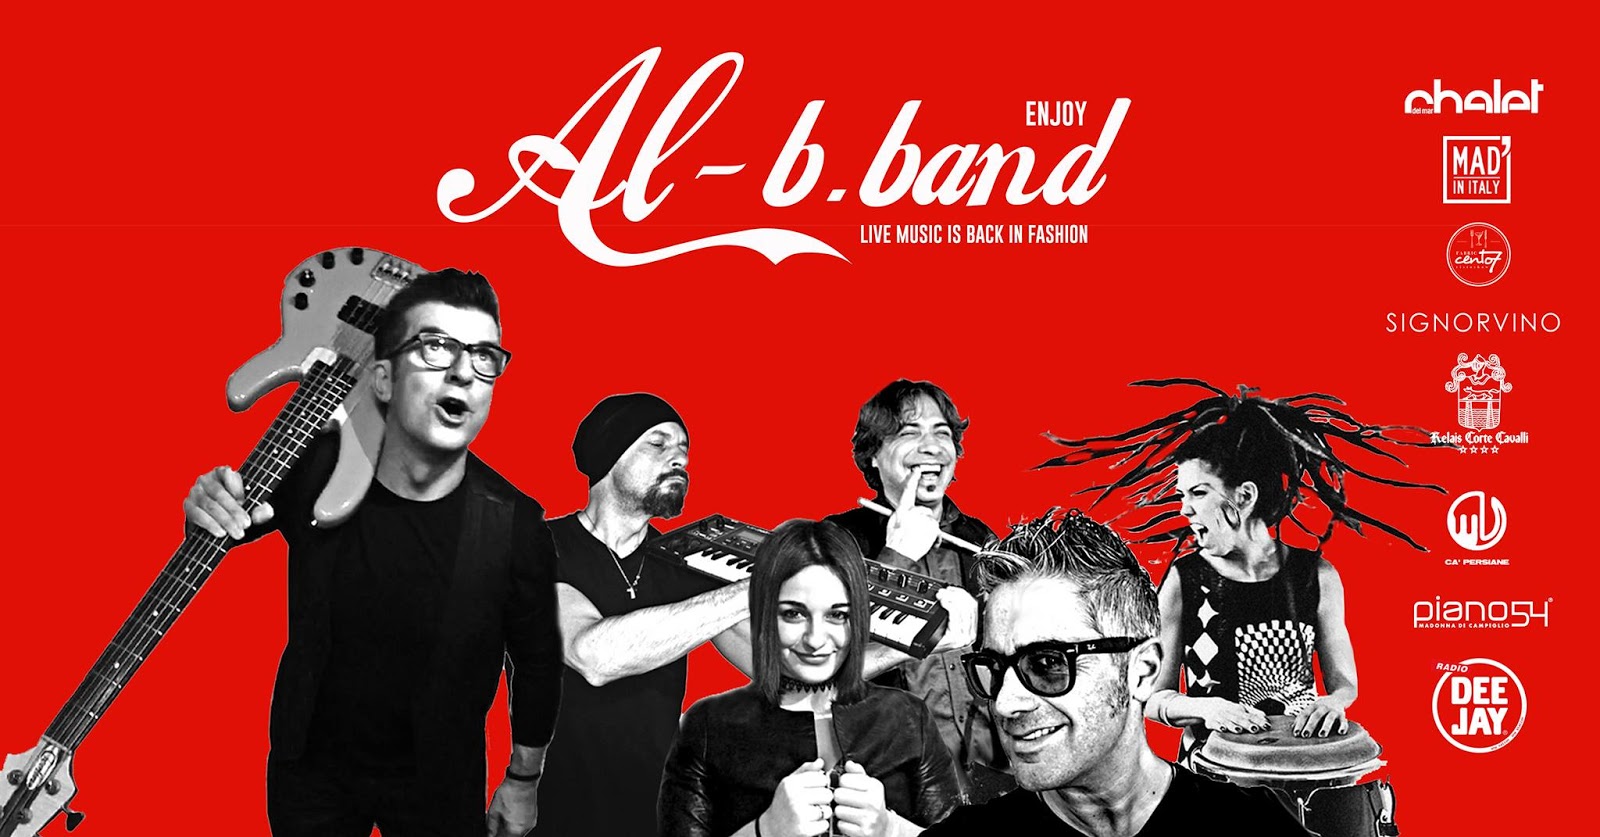   Alberto Salaorni e Al-B.Band: un febbraio di concerti tra Verona, Brescia e Madonna di Campiglio